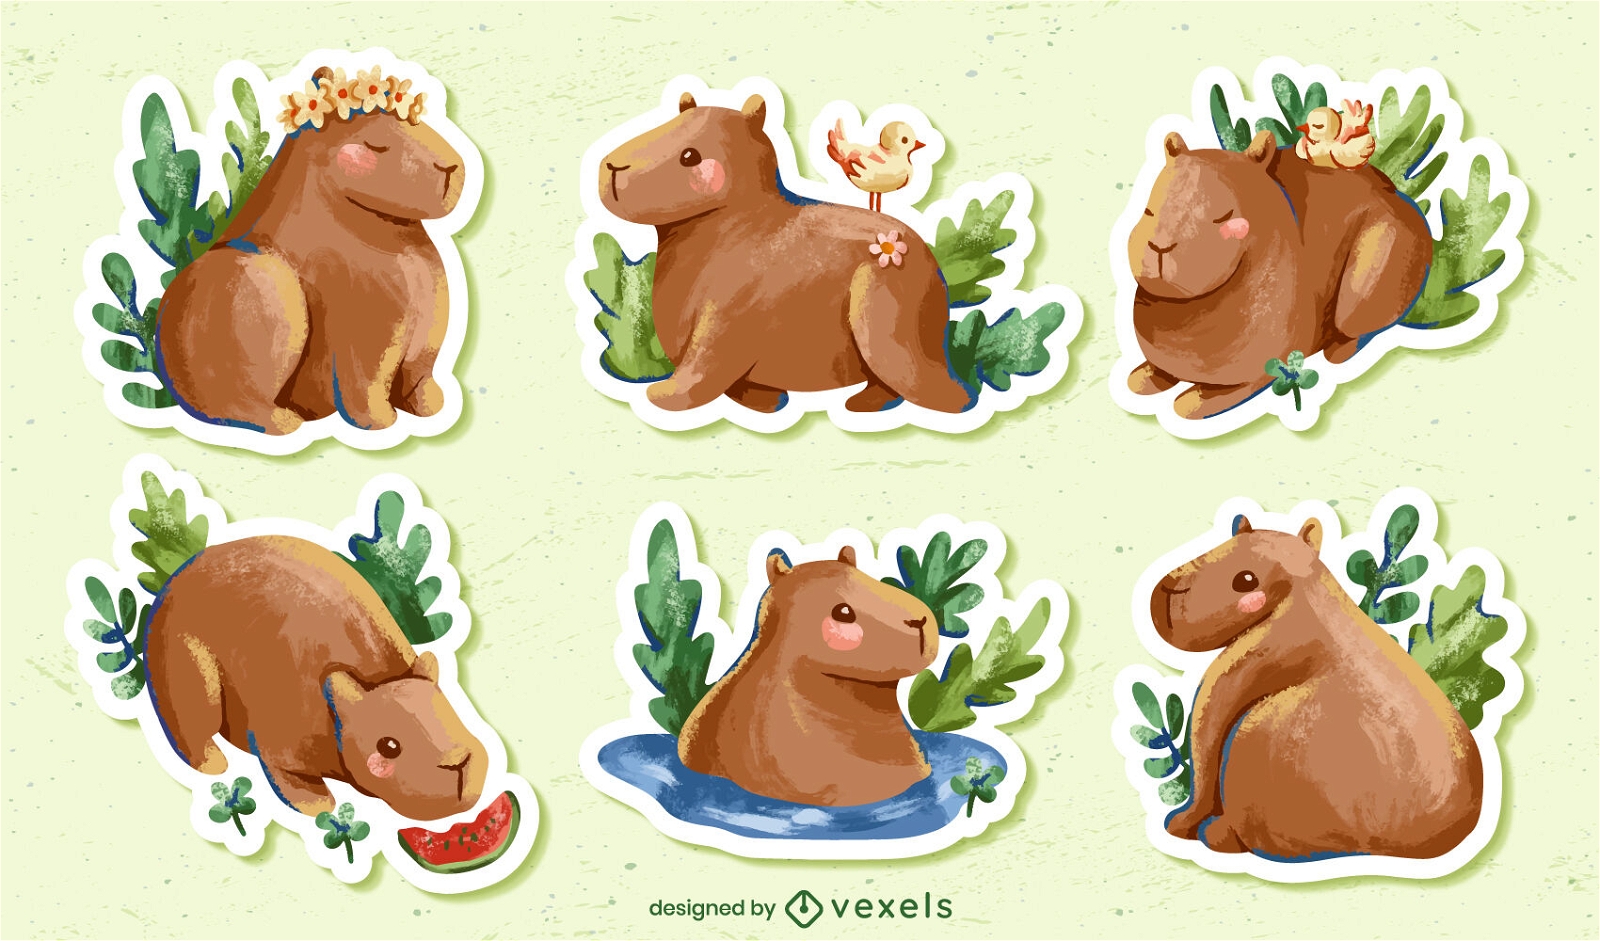 Watercolor capybara stickers set